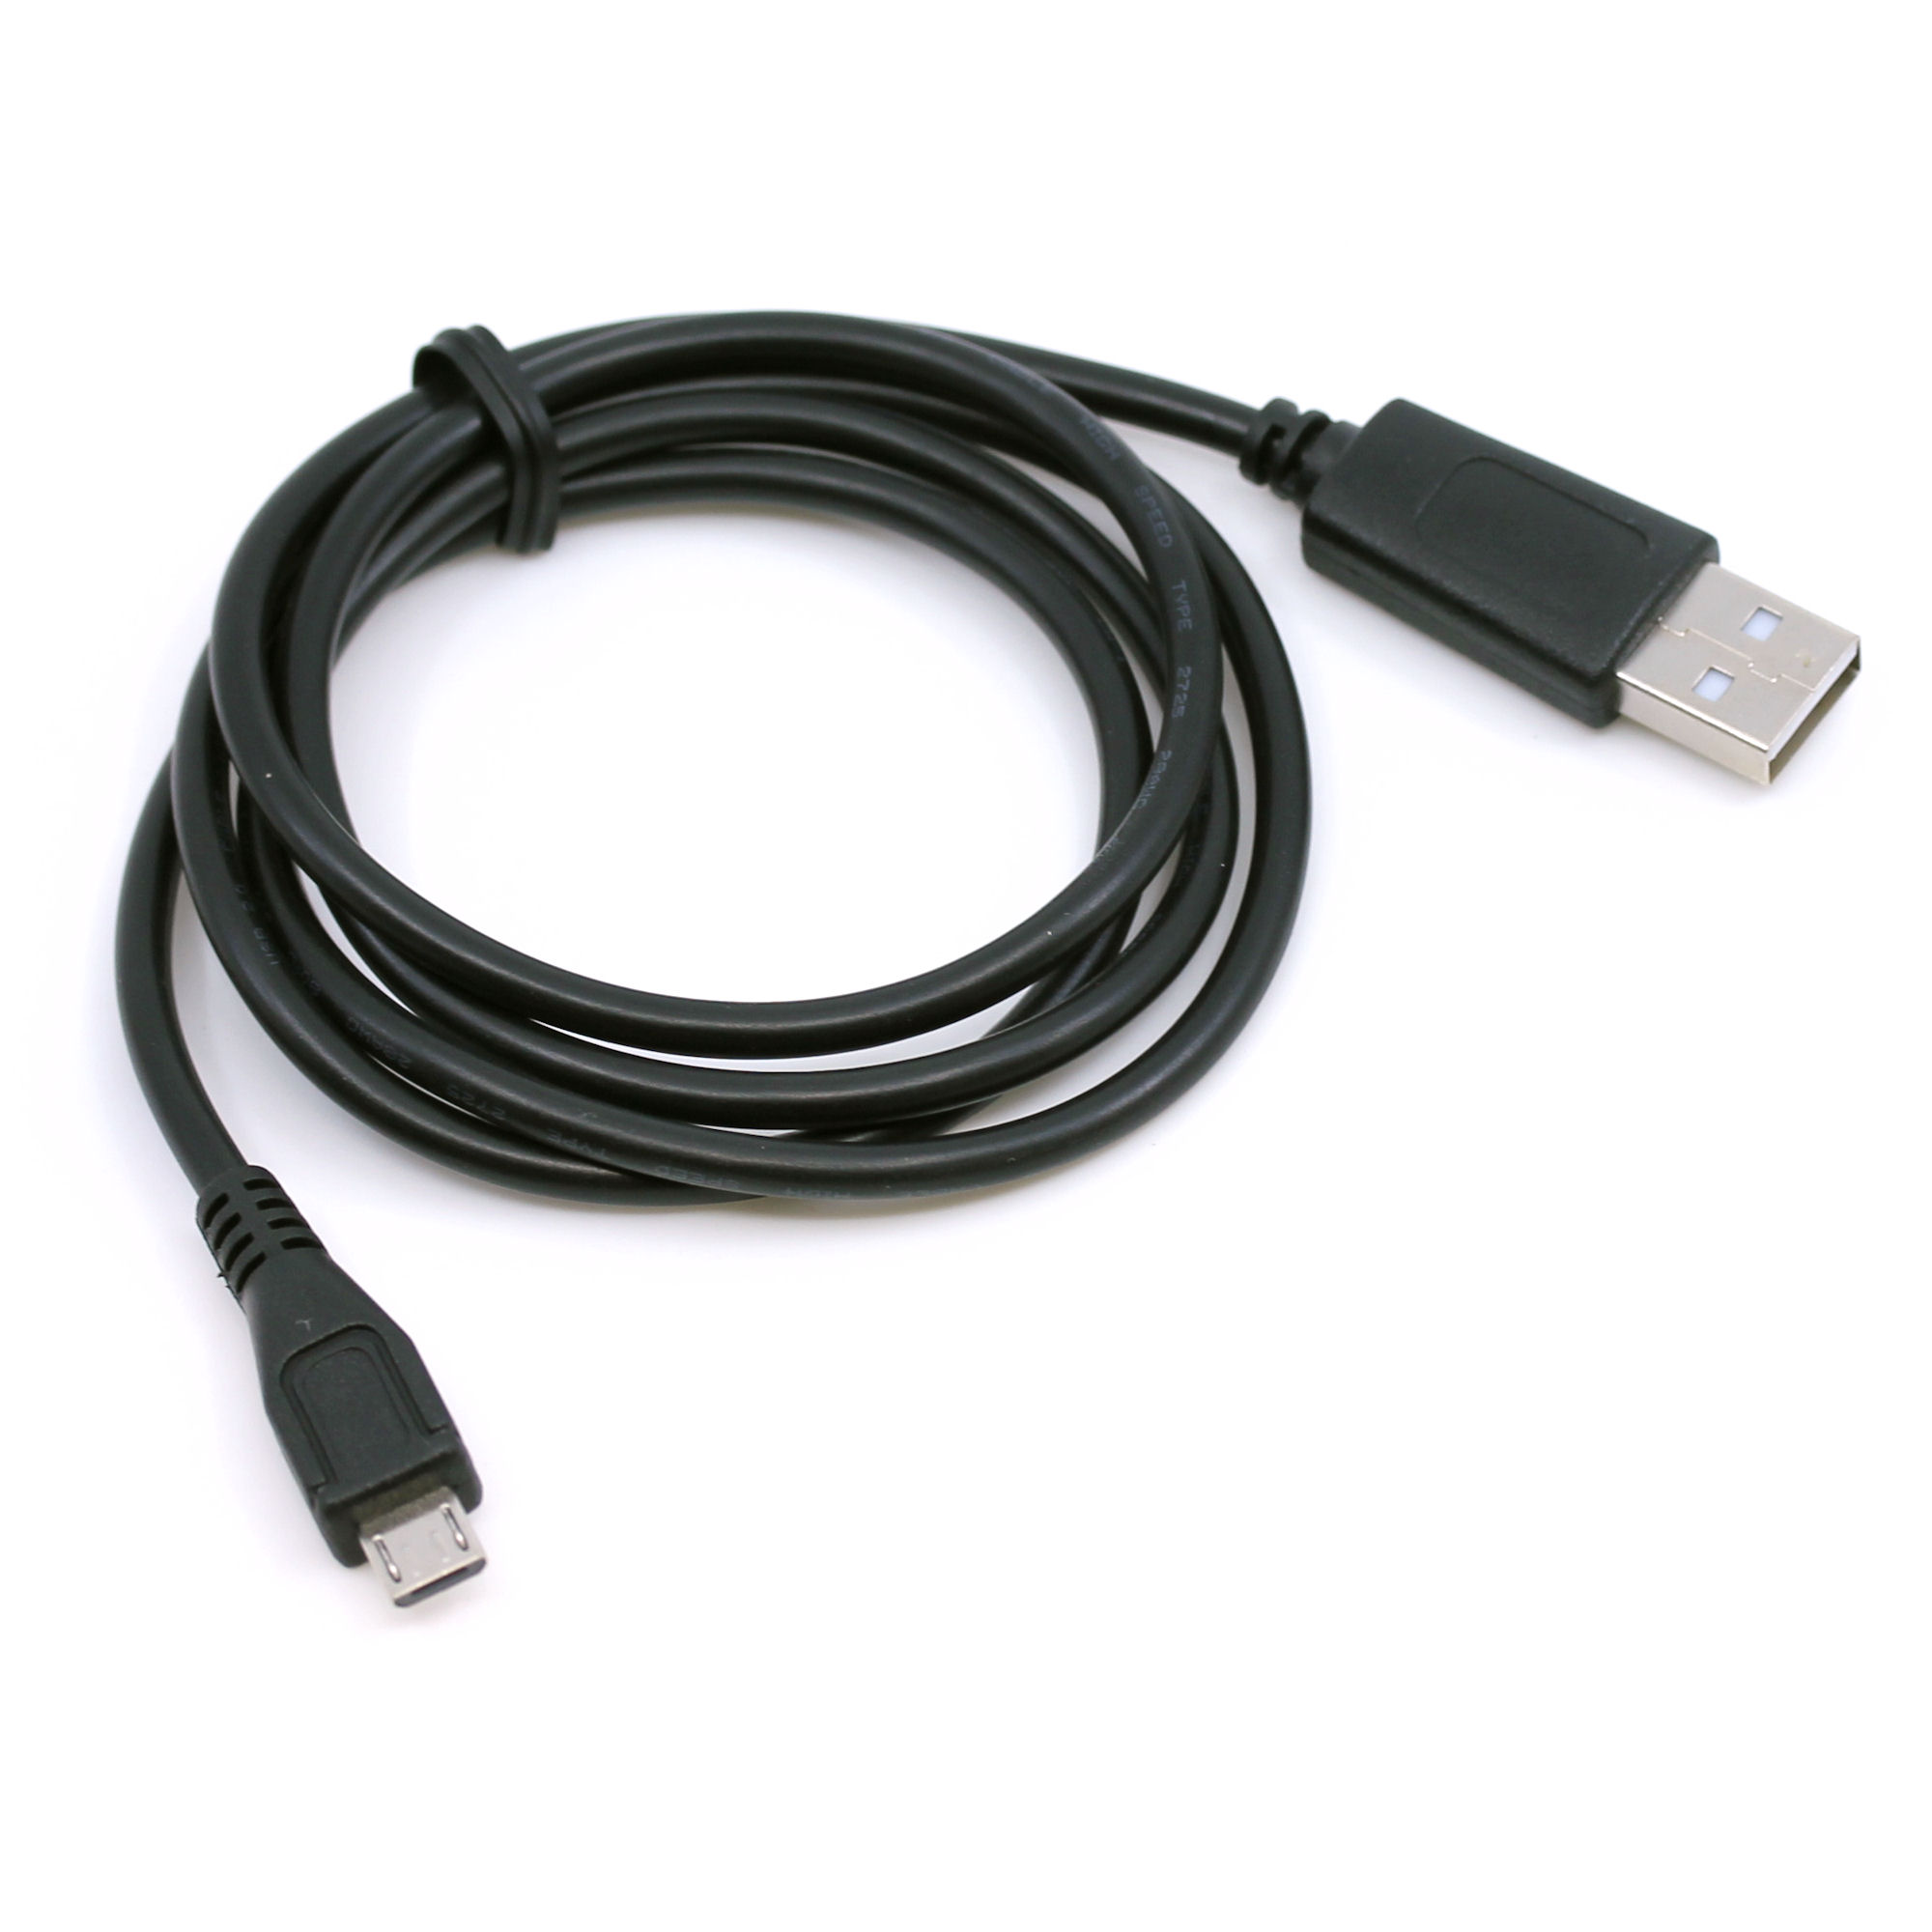 USB Datenkabel für Sony Cyber-Shot DSC-TX30, DSC-WX50, DSC-WX60, DSC-WX70, DSC-WX100, DSC-WX150